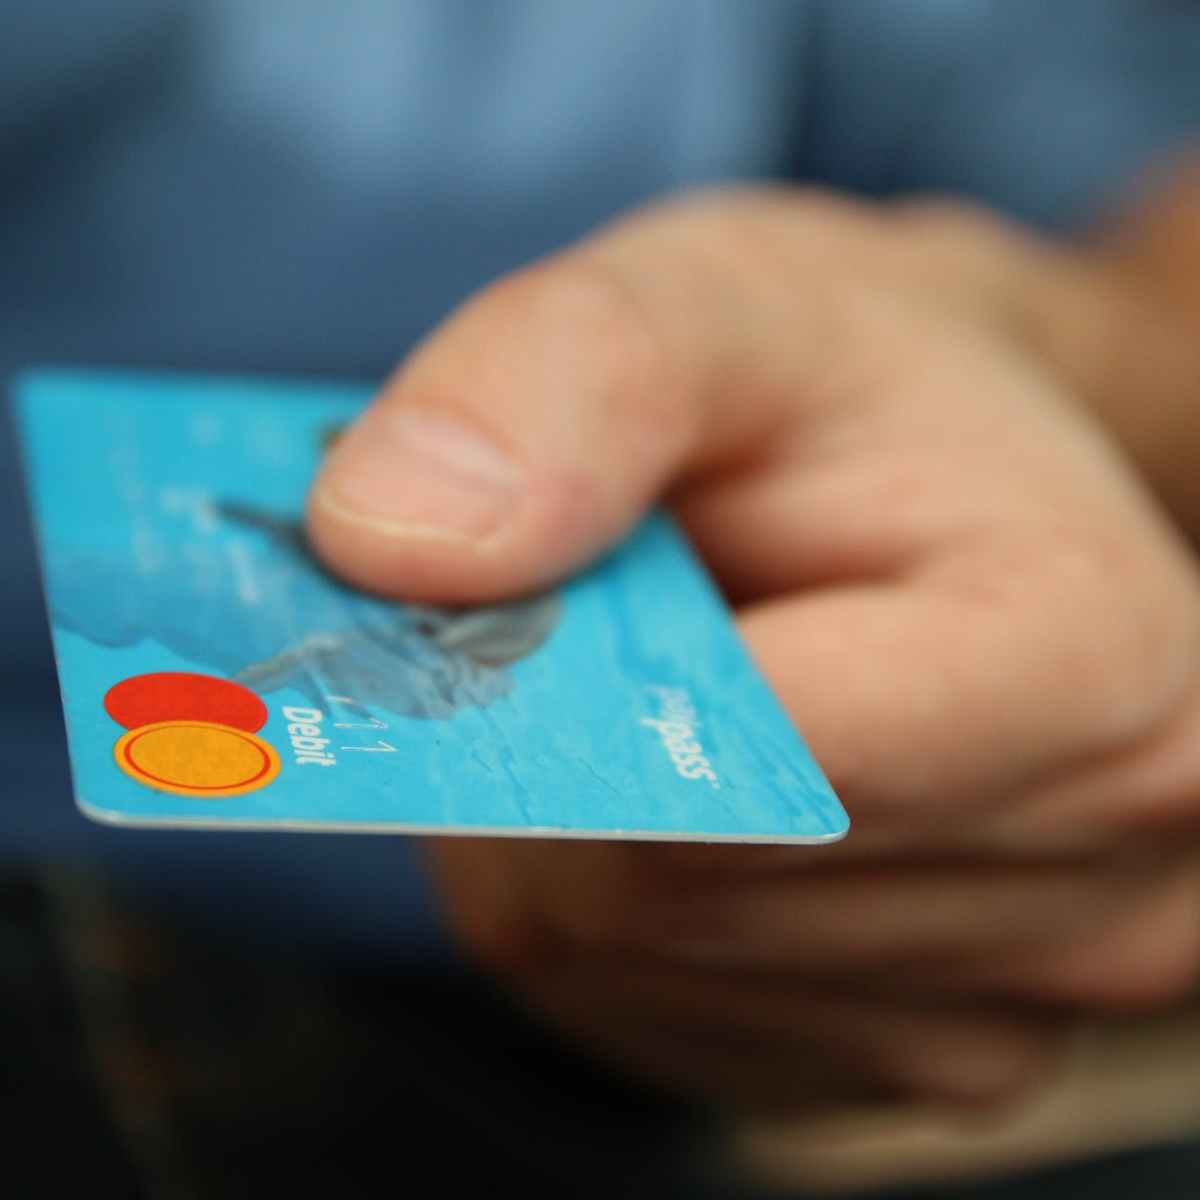 Should I Get a Credit Card Part 2: The Disadvantages